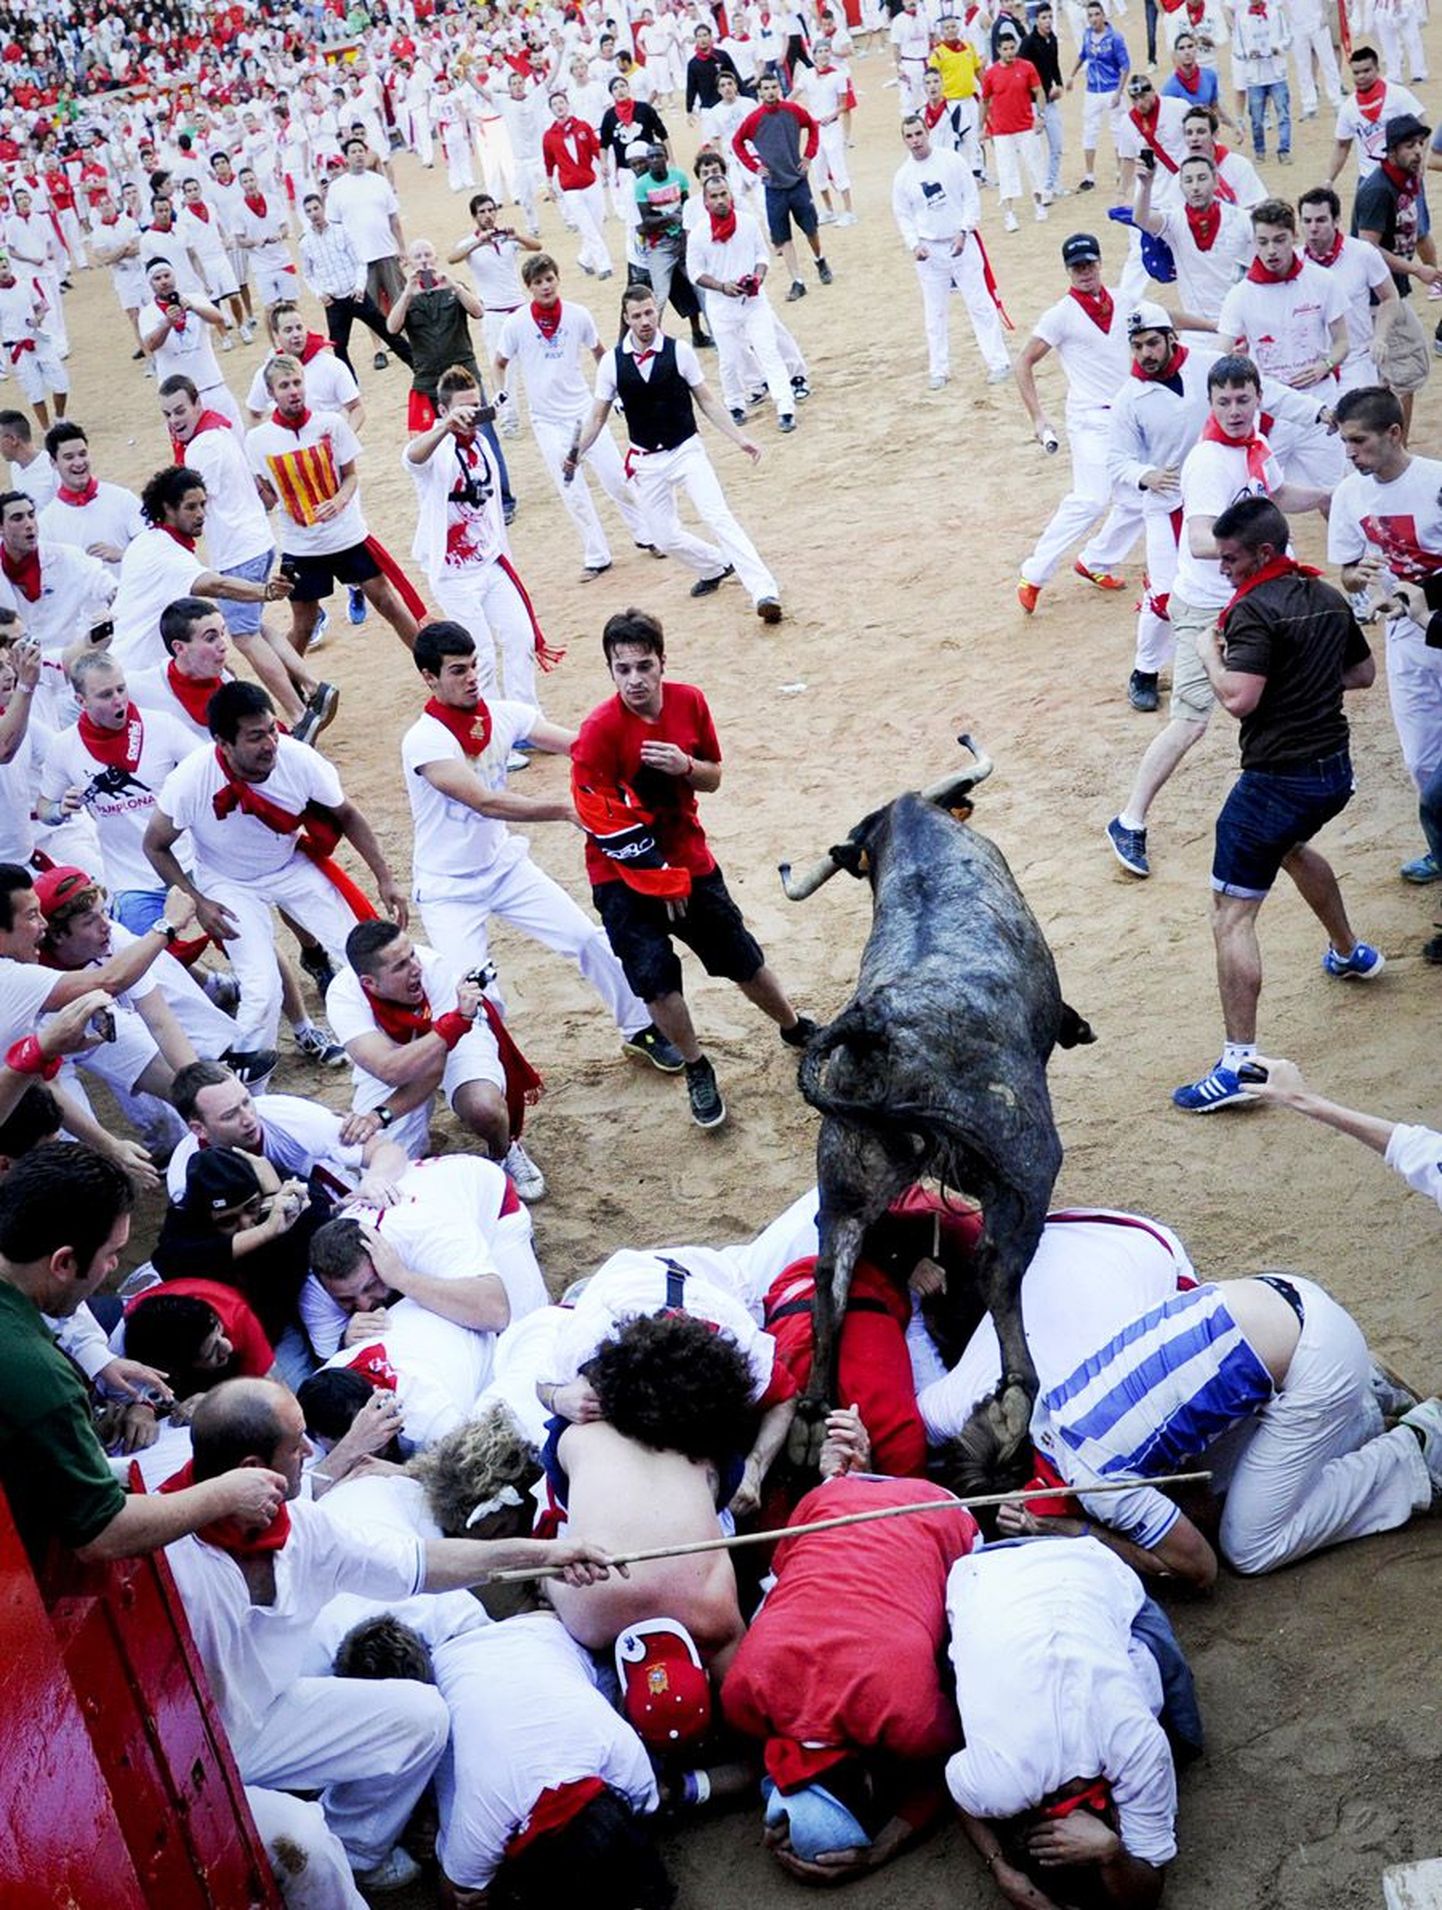 Hispaania Pamplona San Fermini festivali seitsmes päev ei möödunud vigastusteta, kuna traditsioonilise härjajooksu käigus sai viga kuus inimest, kes toimetati haiglasse, kuid kelle vigastused ei ole eluohtlikud.